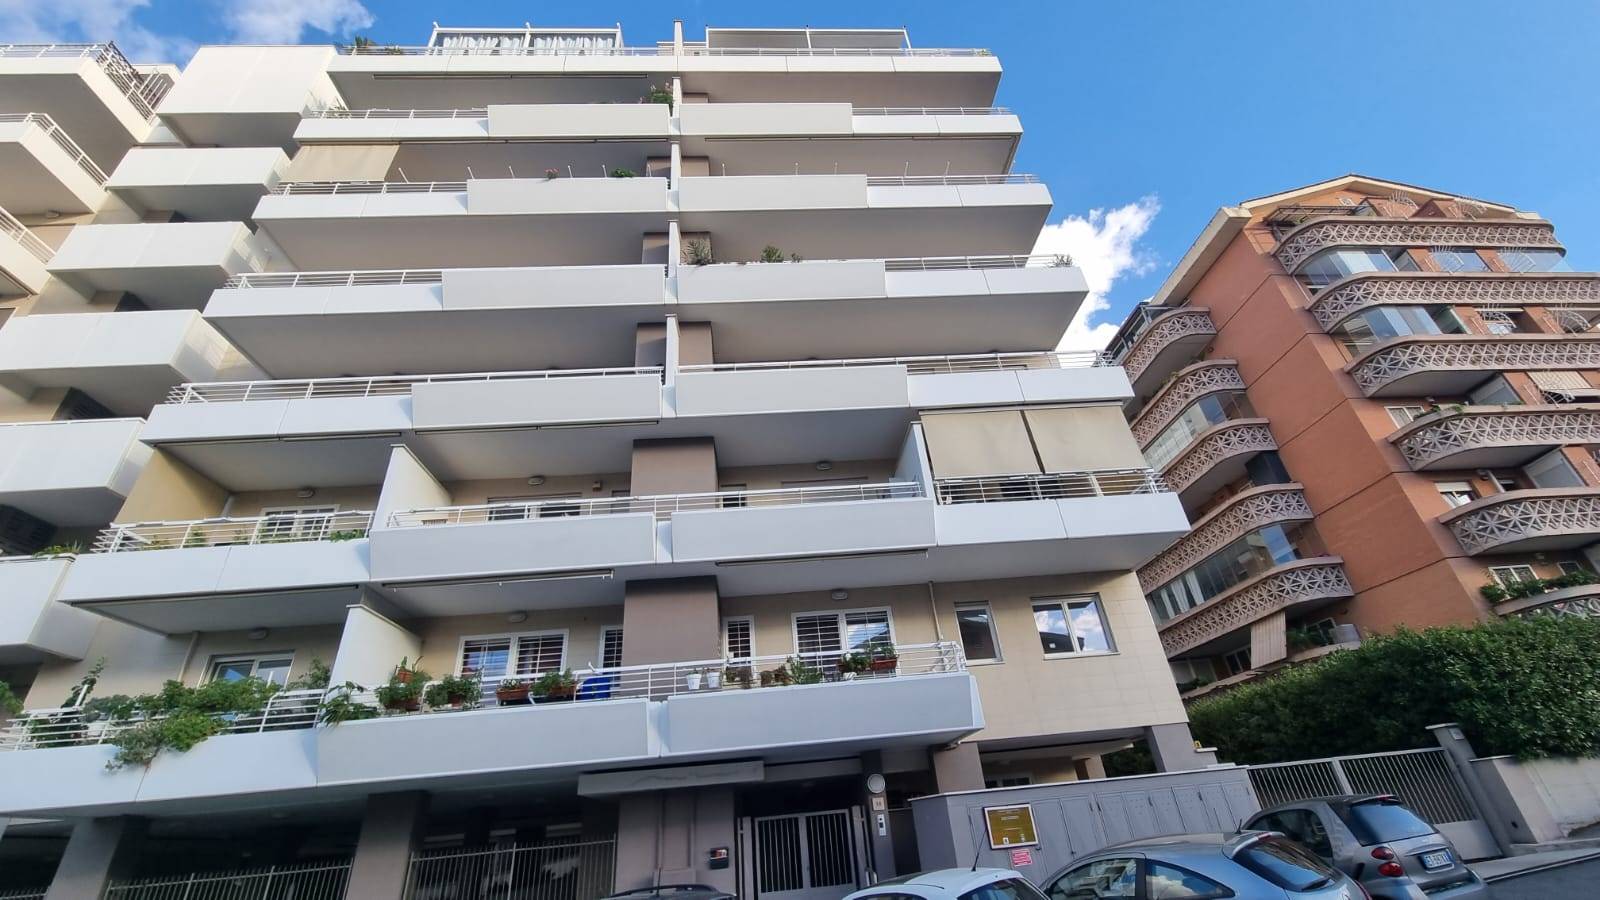 Bufalotta Via Guglielmo Petroni in palazzina di recente costruzione proponiamo in affitto delizioso appartamento di 50 mq mai abitato composto da 